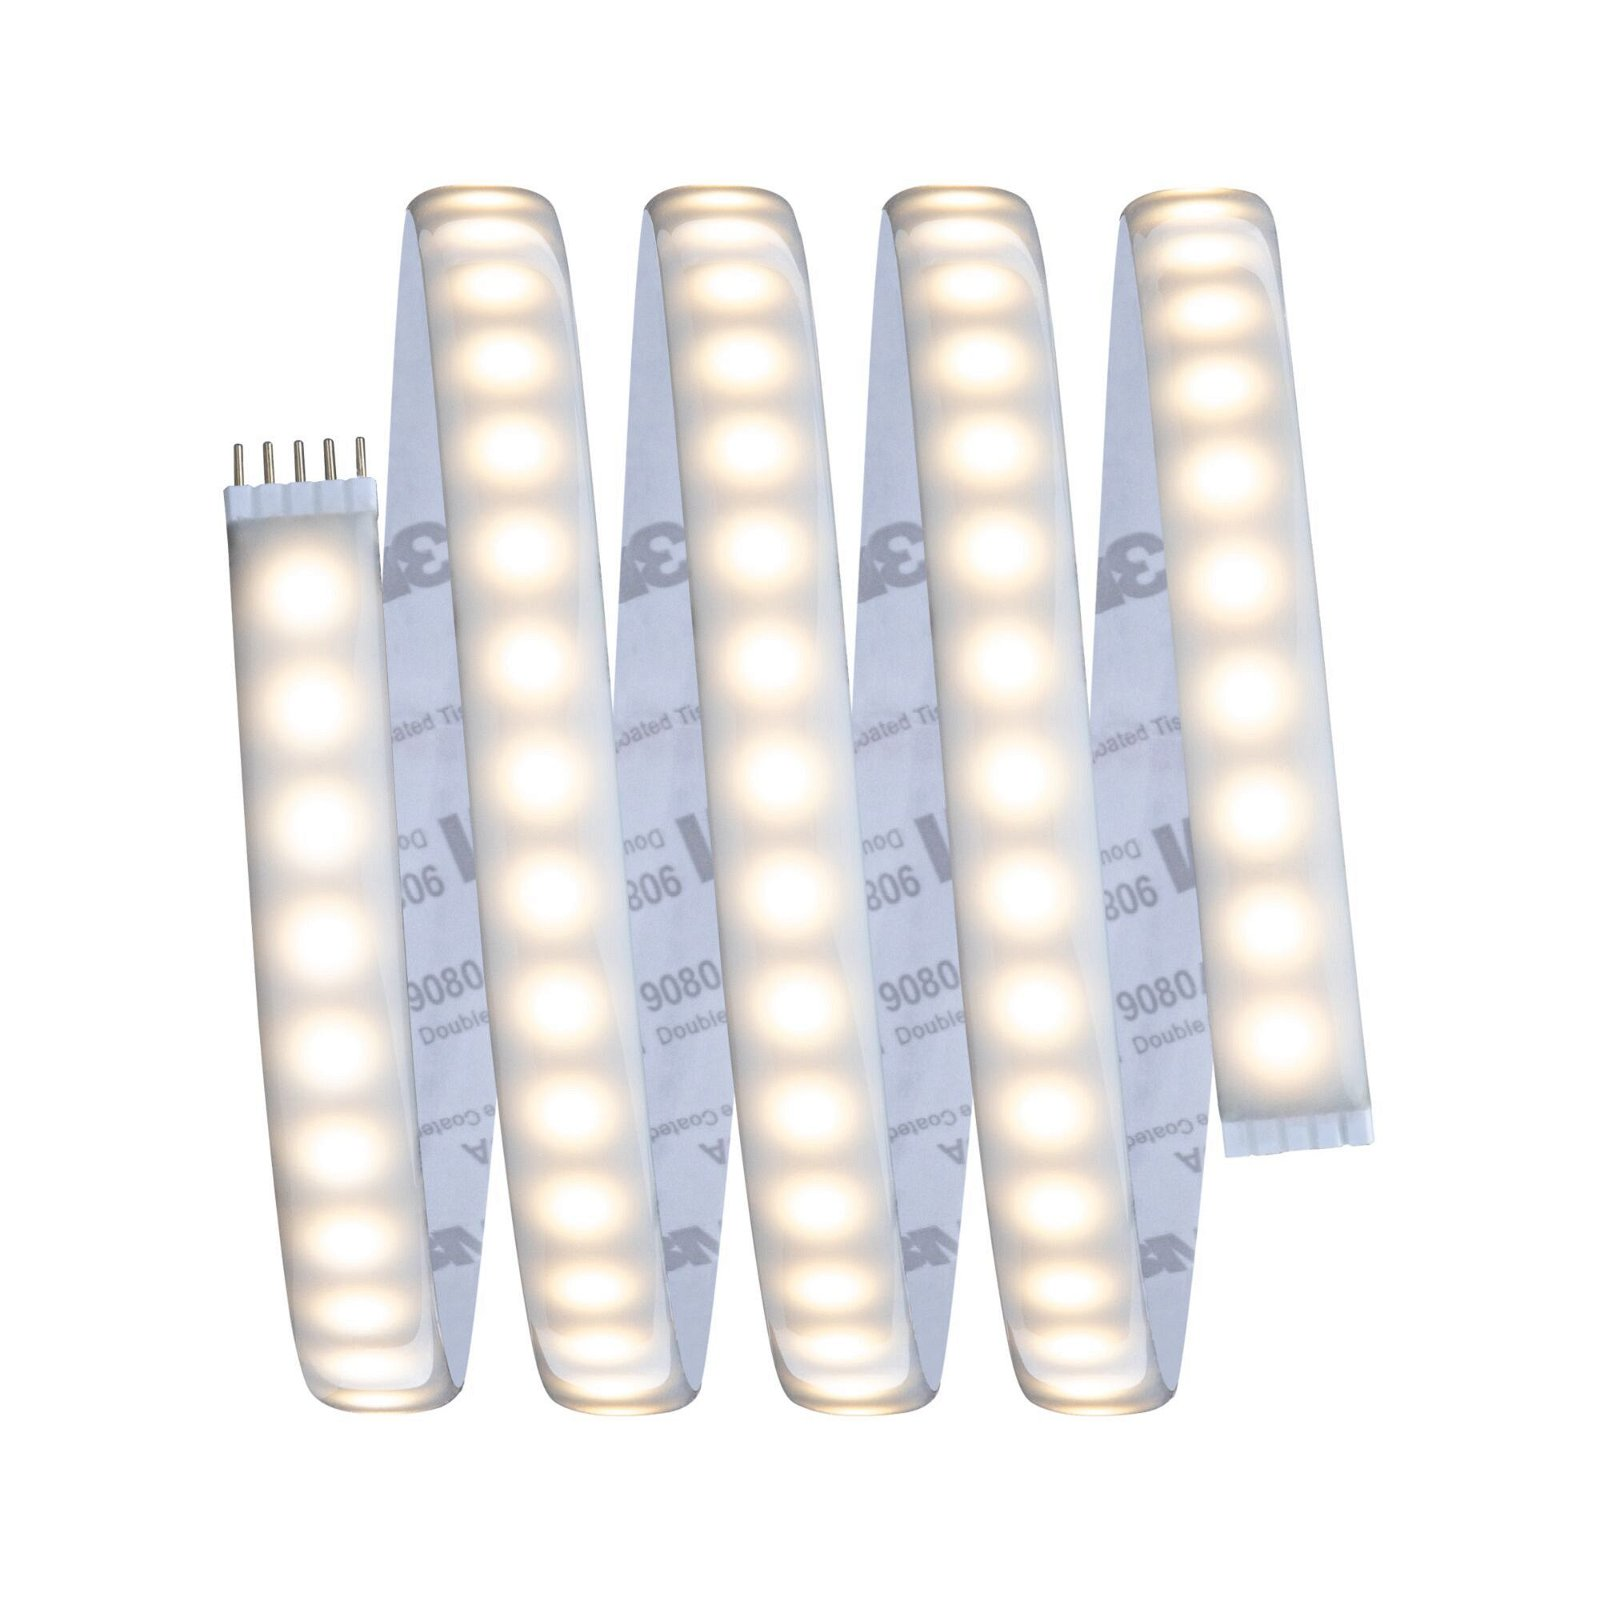 PAULMANN LICHT MaxLED 1000 (70531) Strips White LED Tunable